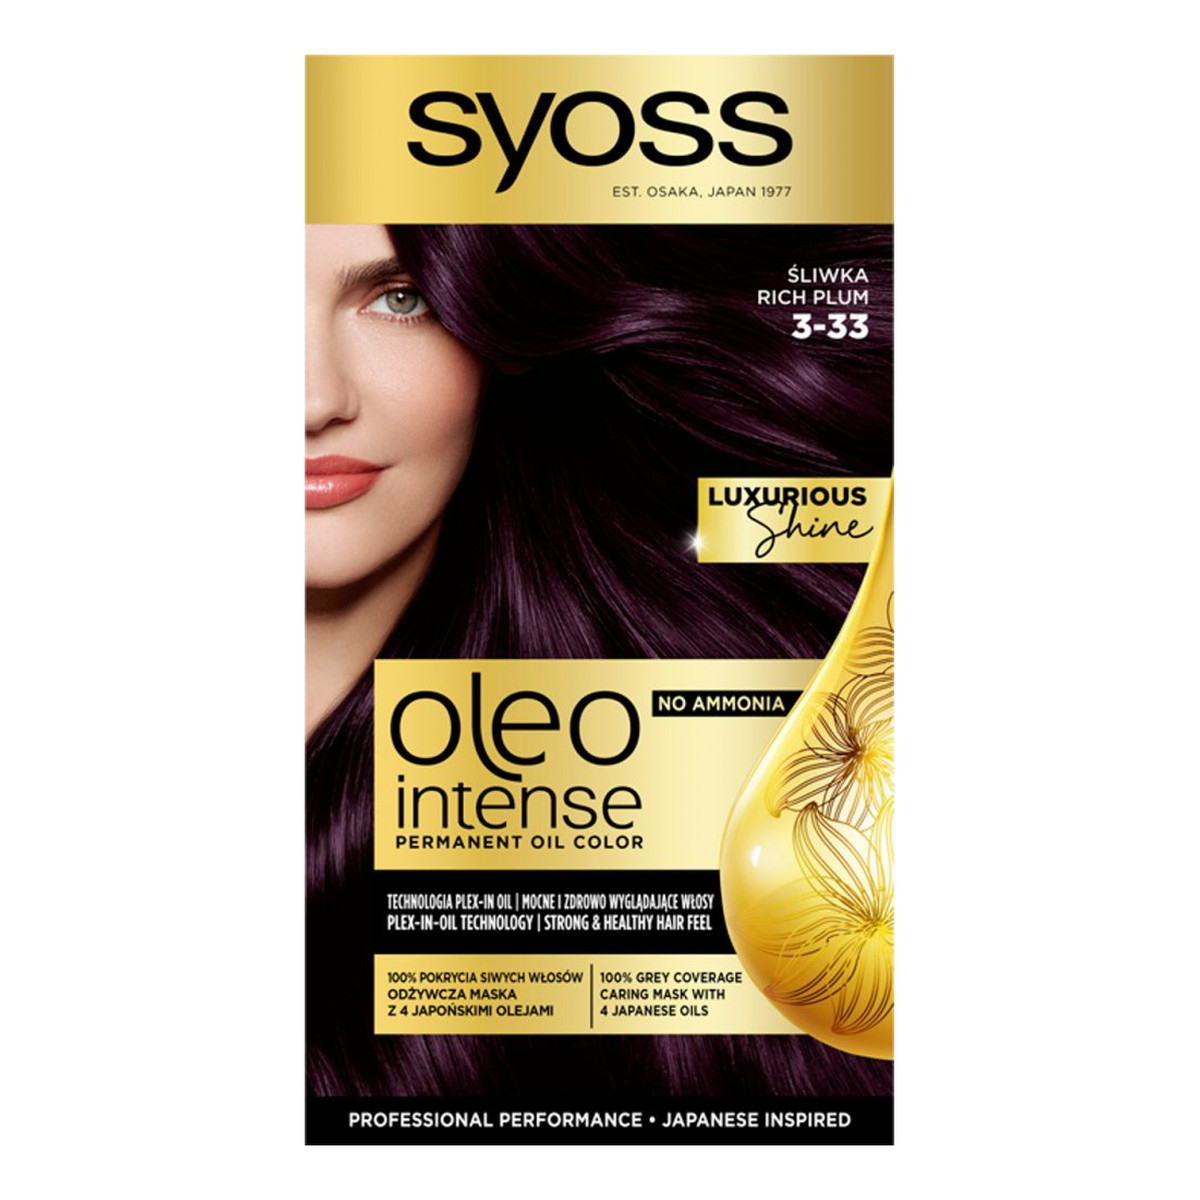 Syoss Oleo intense farba do włosów trwale koloryzująca z olejkami 3-33 bogata śliwka